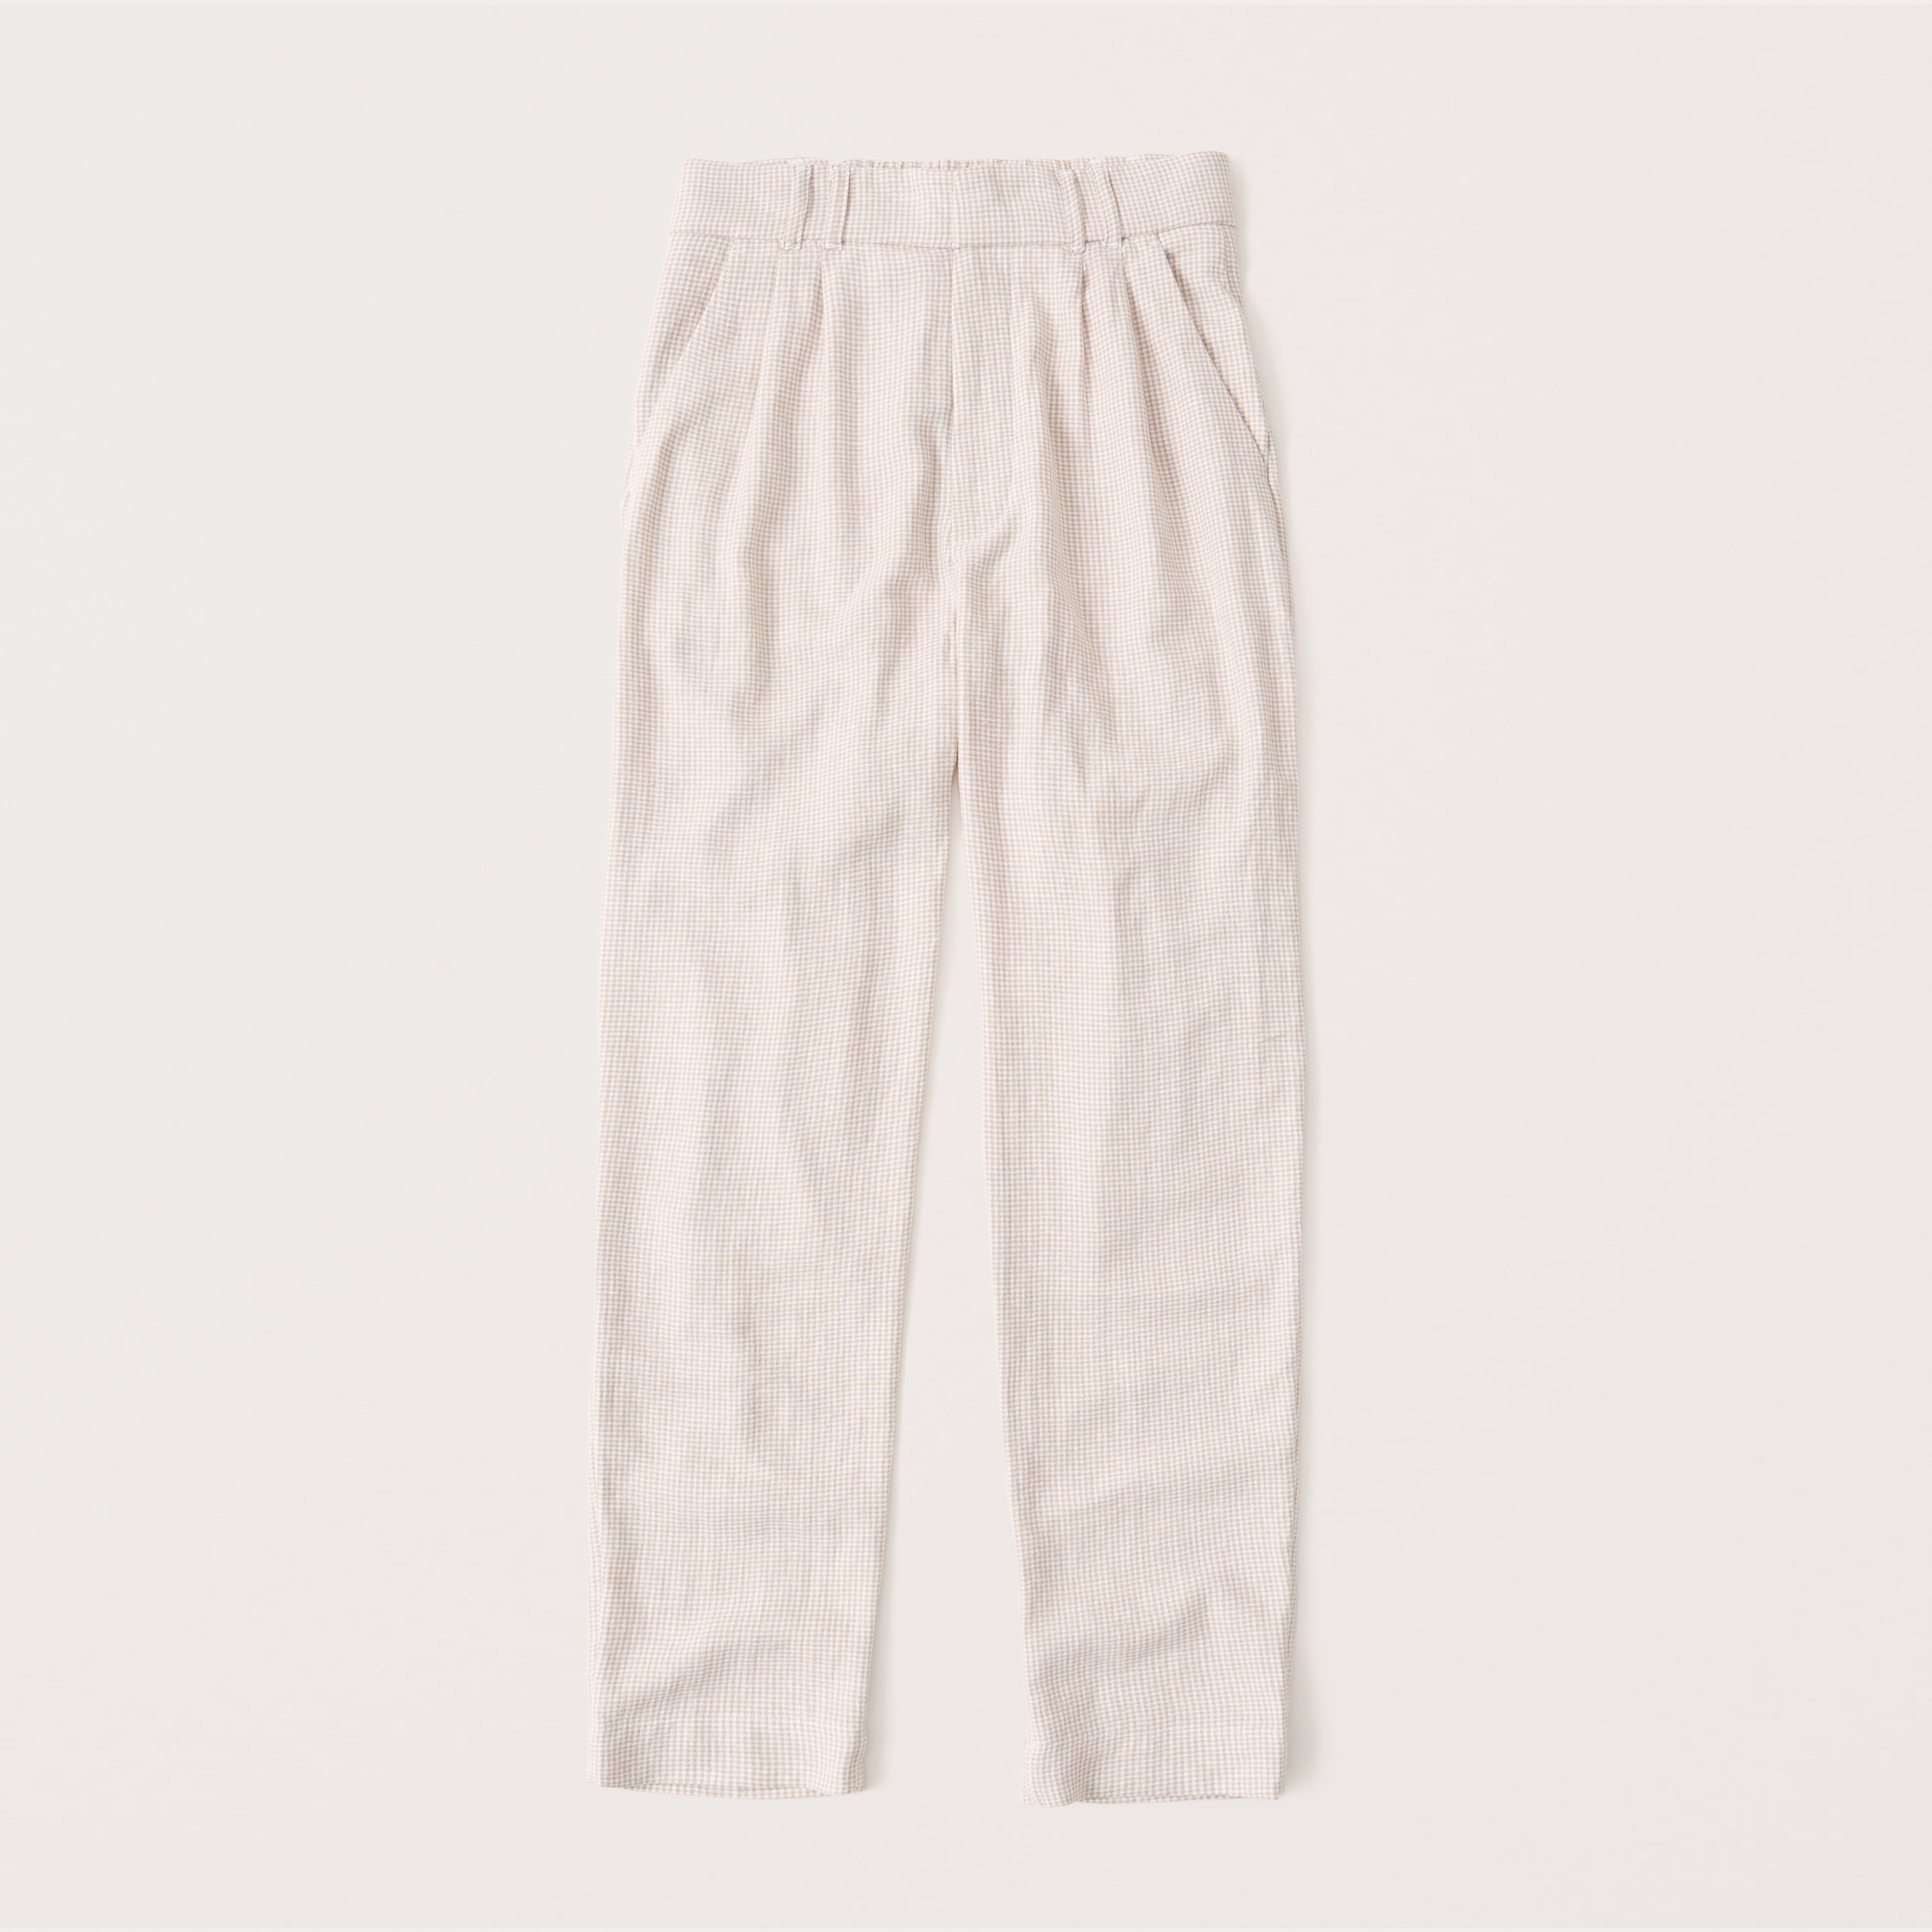 abercrombie linen shorts